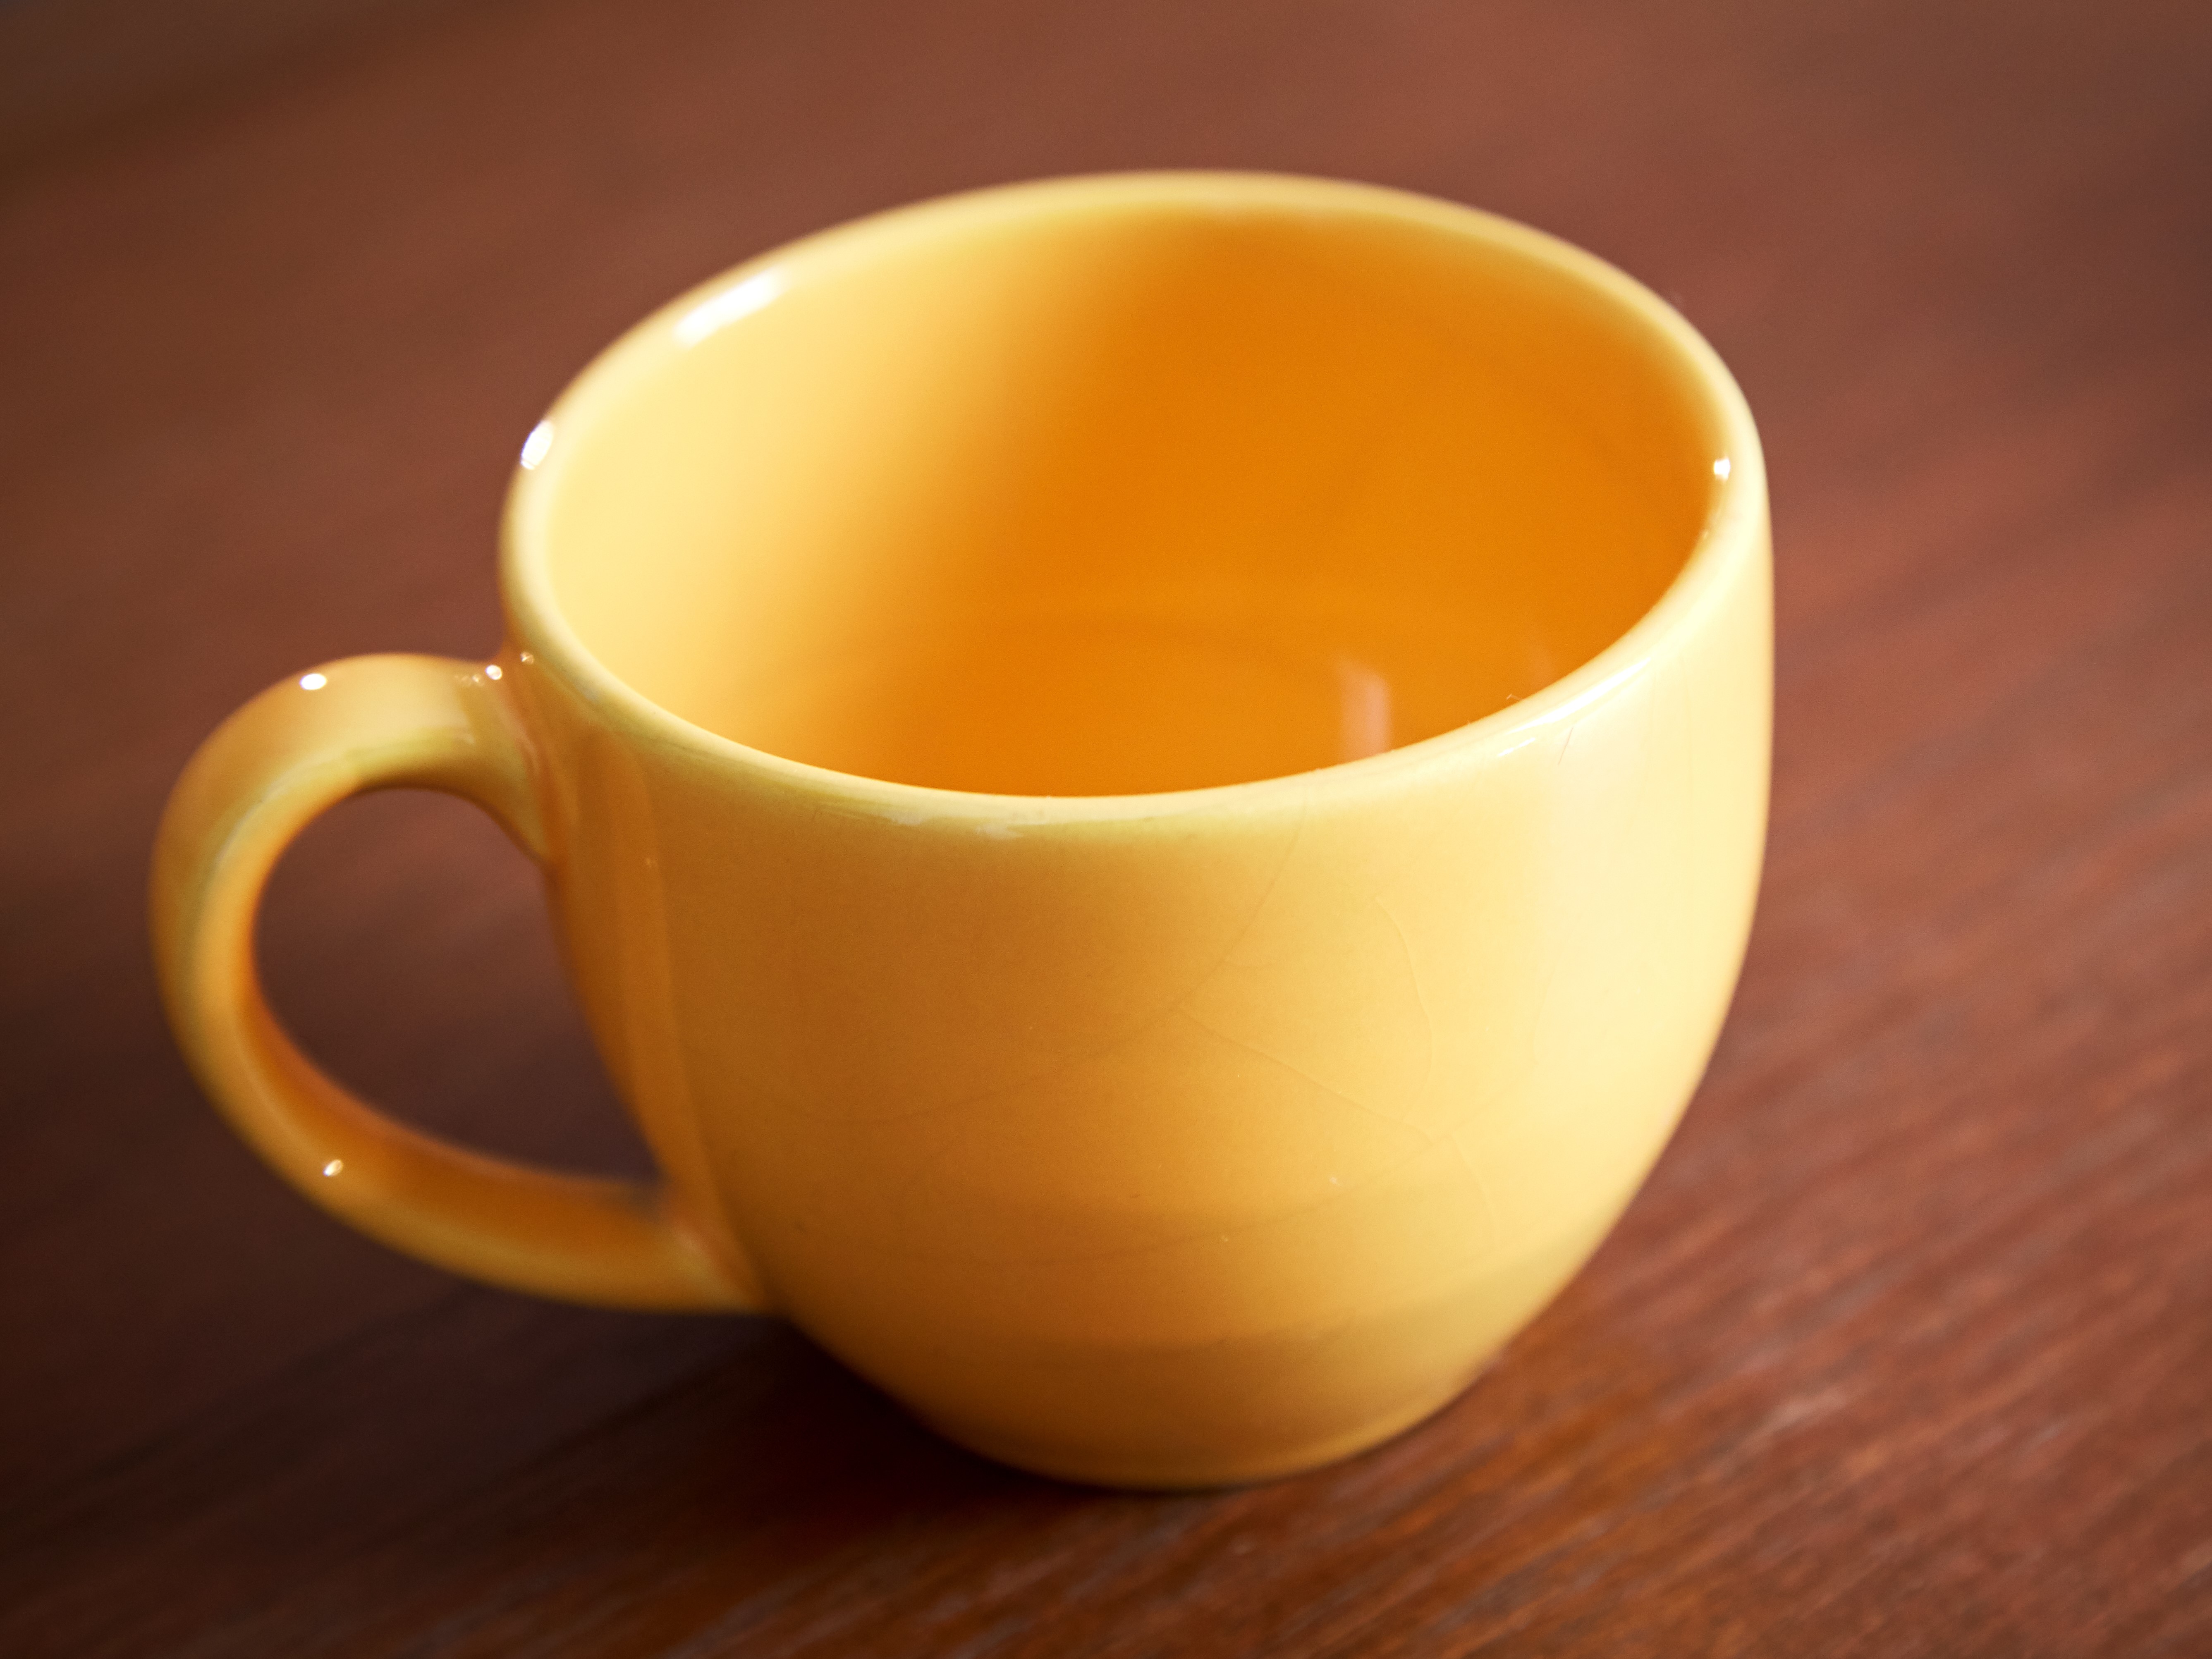 empty yellow mug on wood table